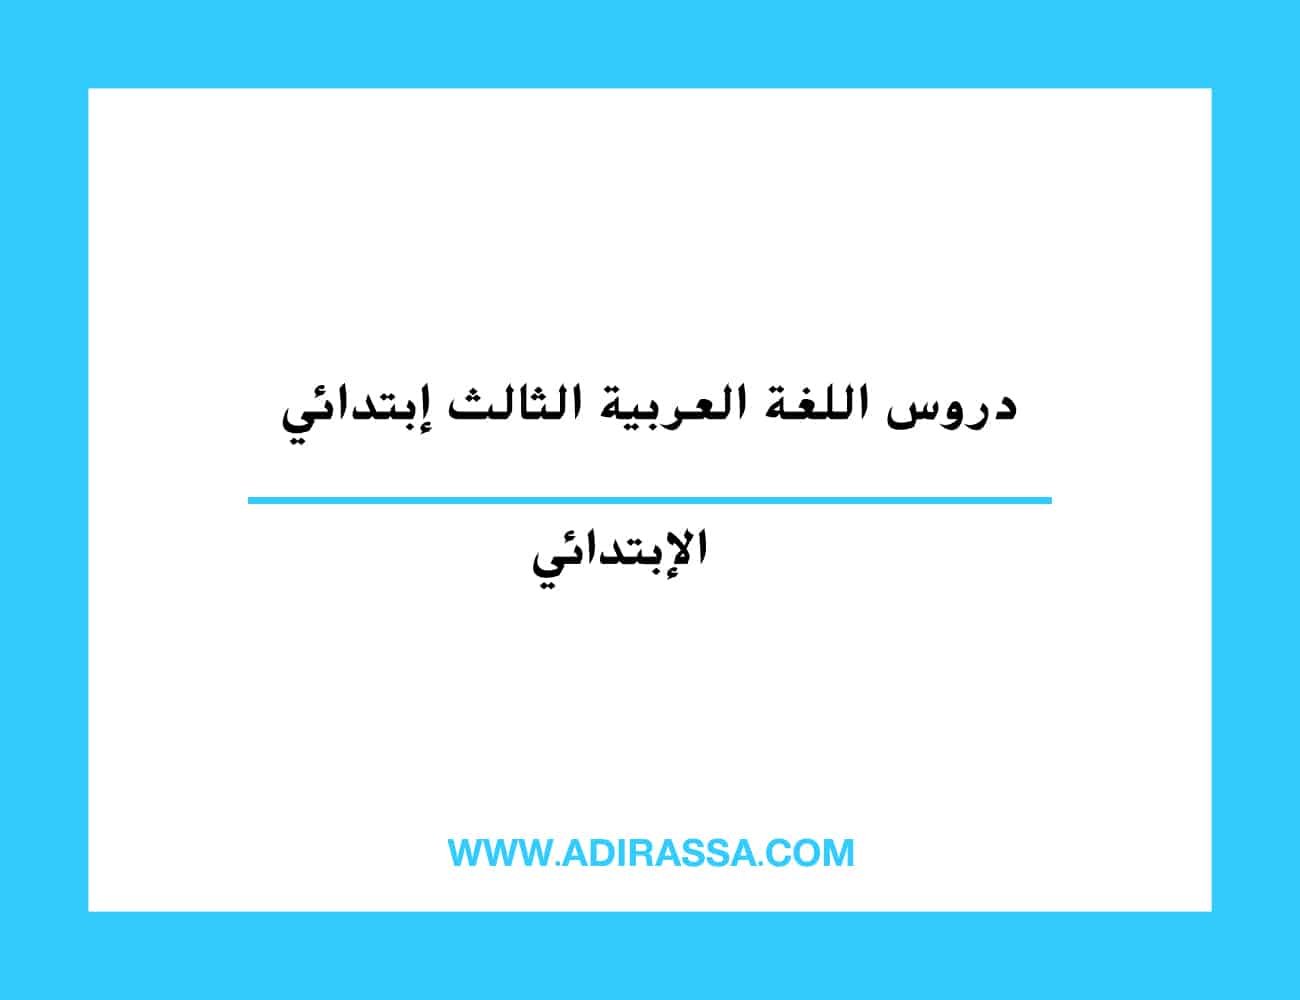 دروس اللغة العربية الثالث ابتدائي المقررة بالمدرسة المغربية